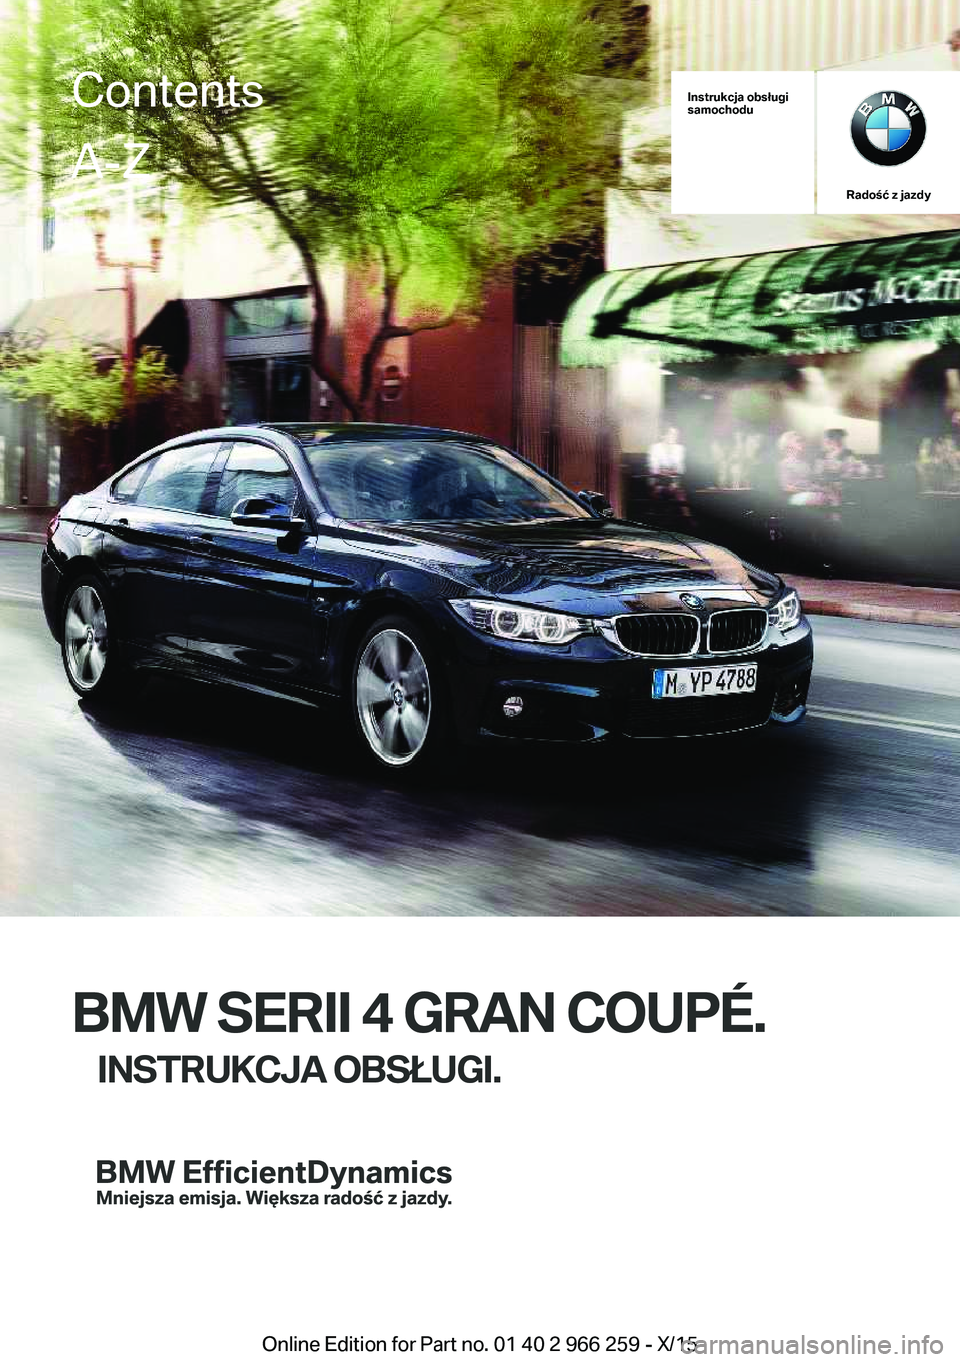 BMW 4 SERIES GRAN COUPE 2016  Instrukcja obsługi (in Polish) Instrukcja obsługi
samochodu
Radość z jazdy
BMW SERII 4 GRAN COUPÉ.
INSTRUKCJA OBSŁUGI.
ContentsA-Z
Online Edition for Part no. 01 40 2 966 259 - X/15   